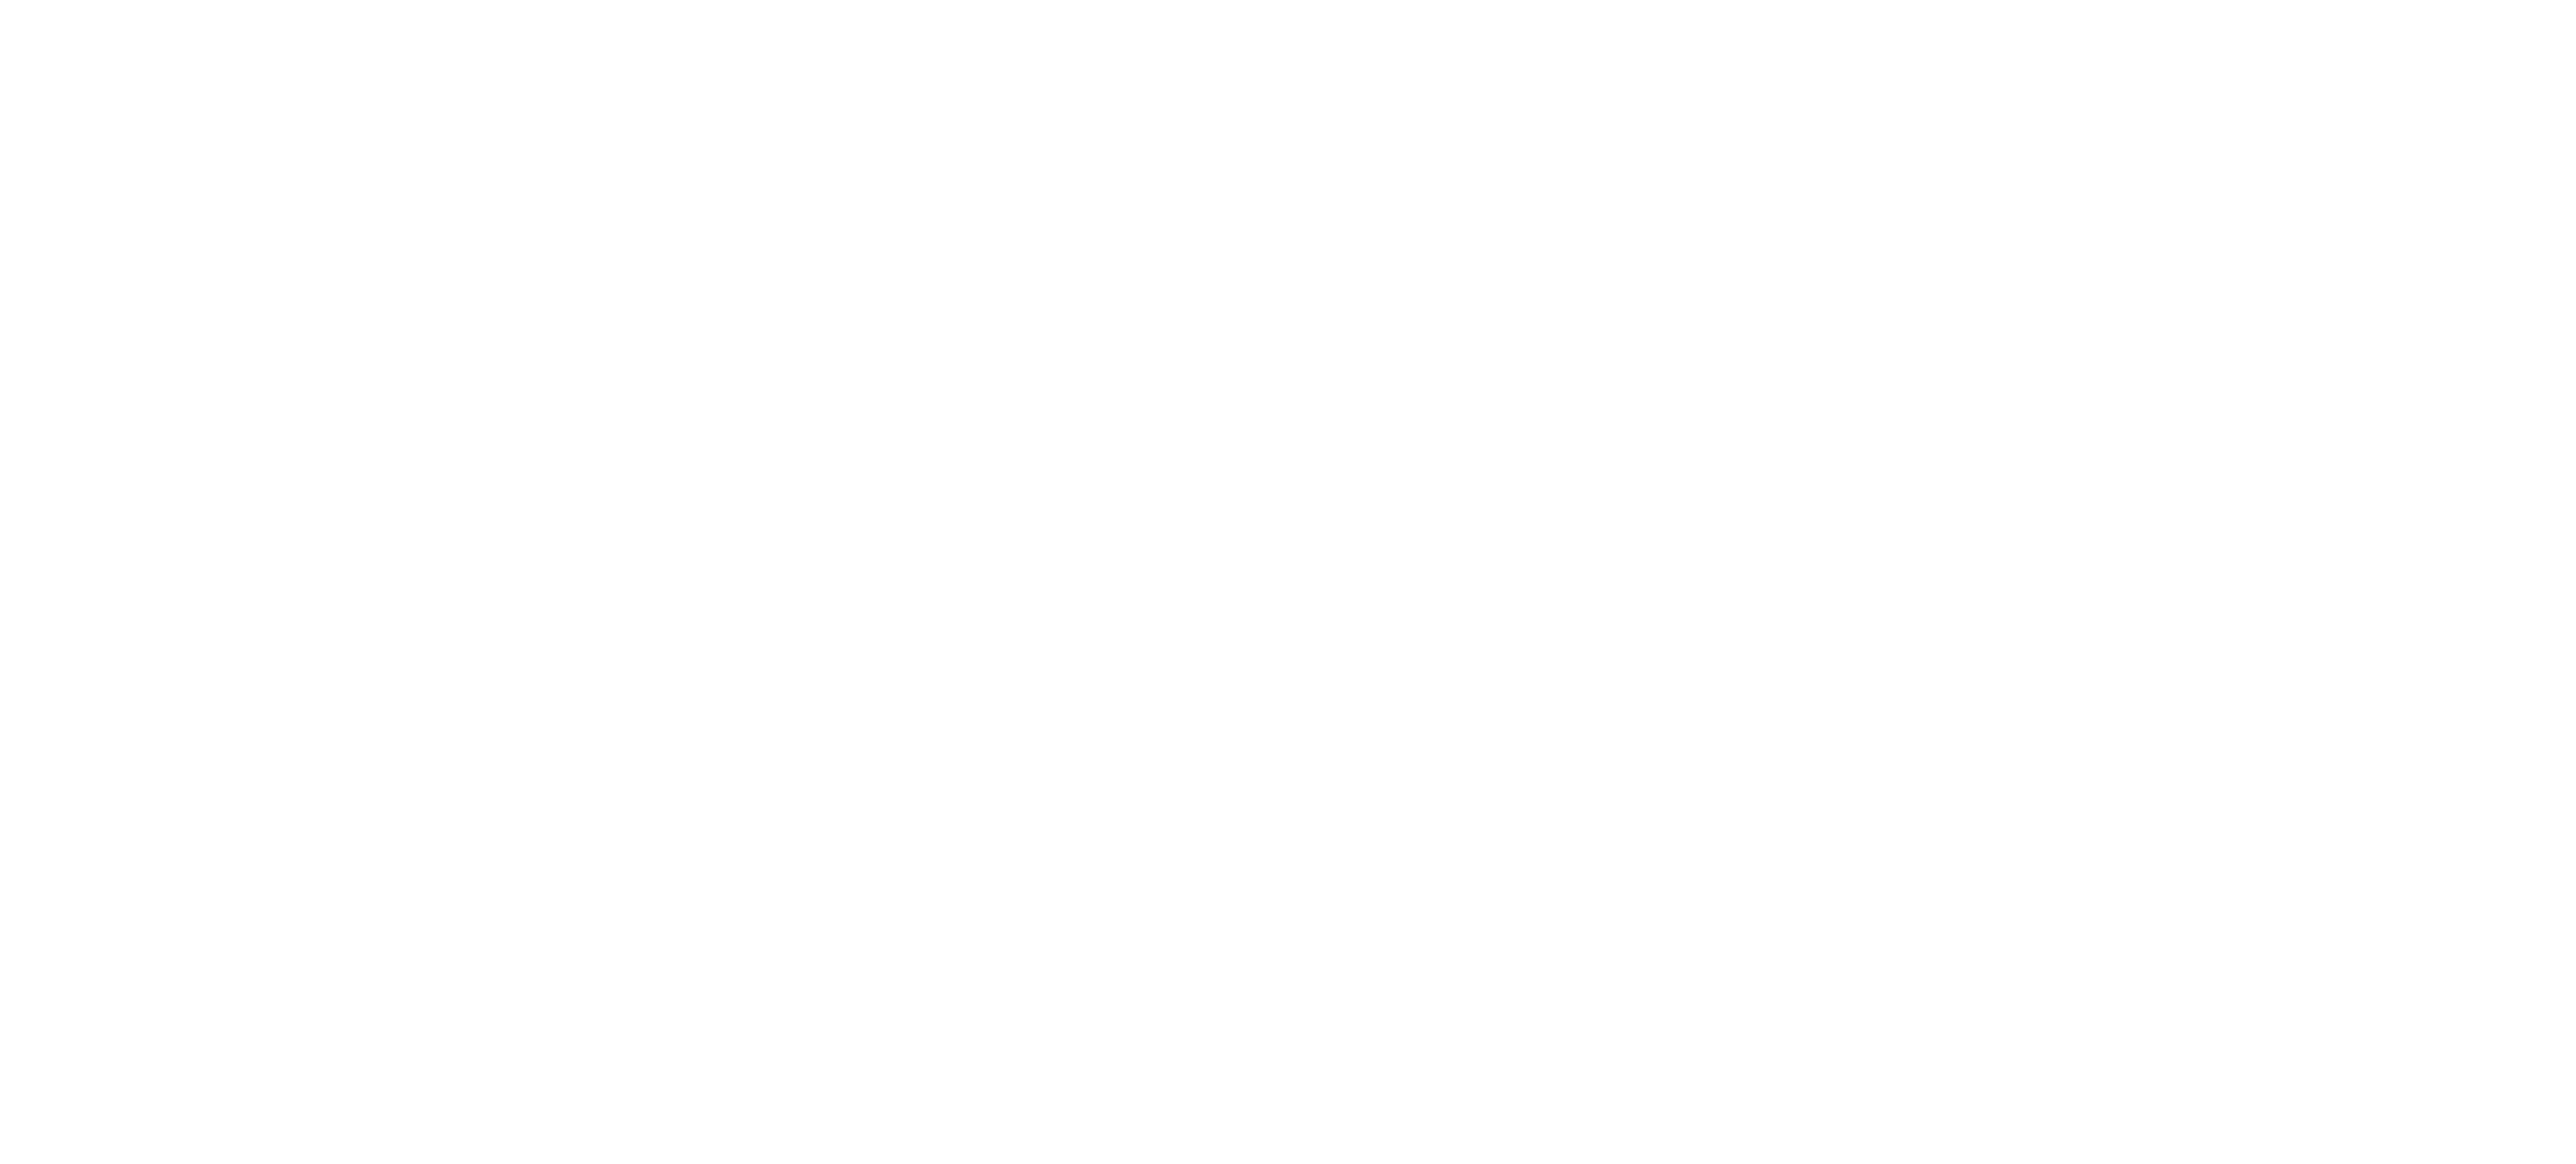 VV Logo